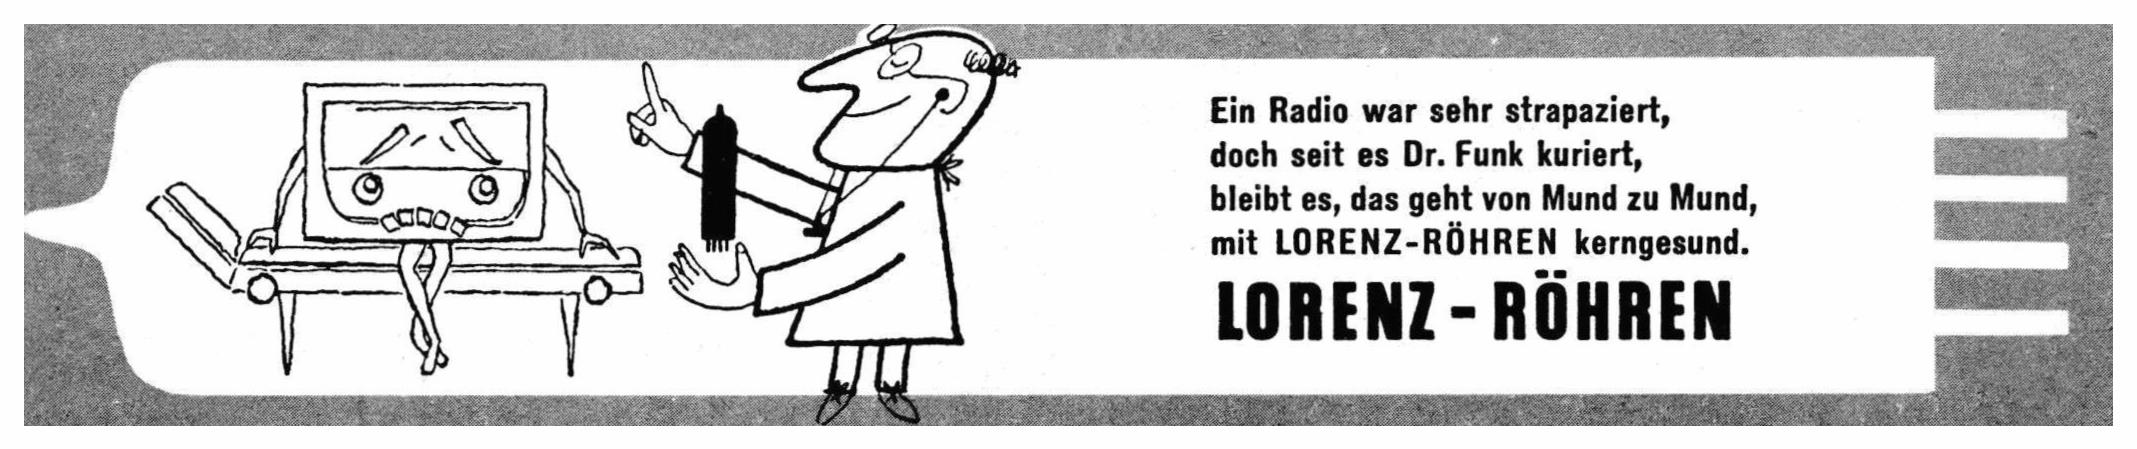 Lorenz 1959 0.jpg